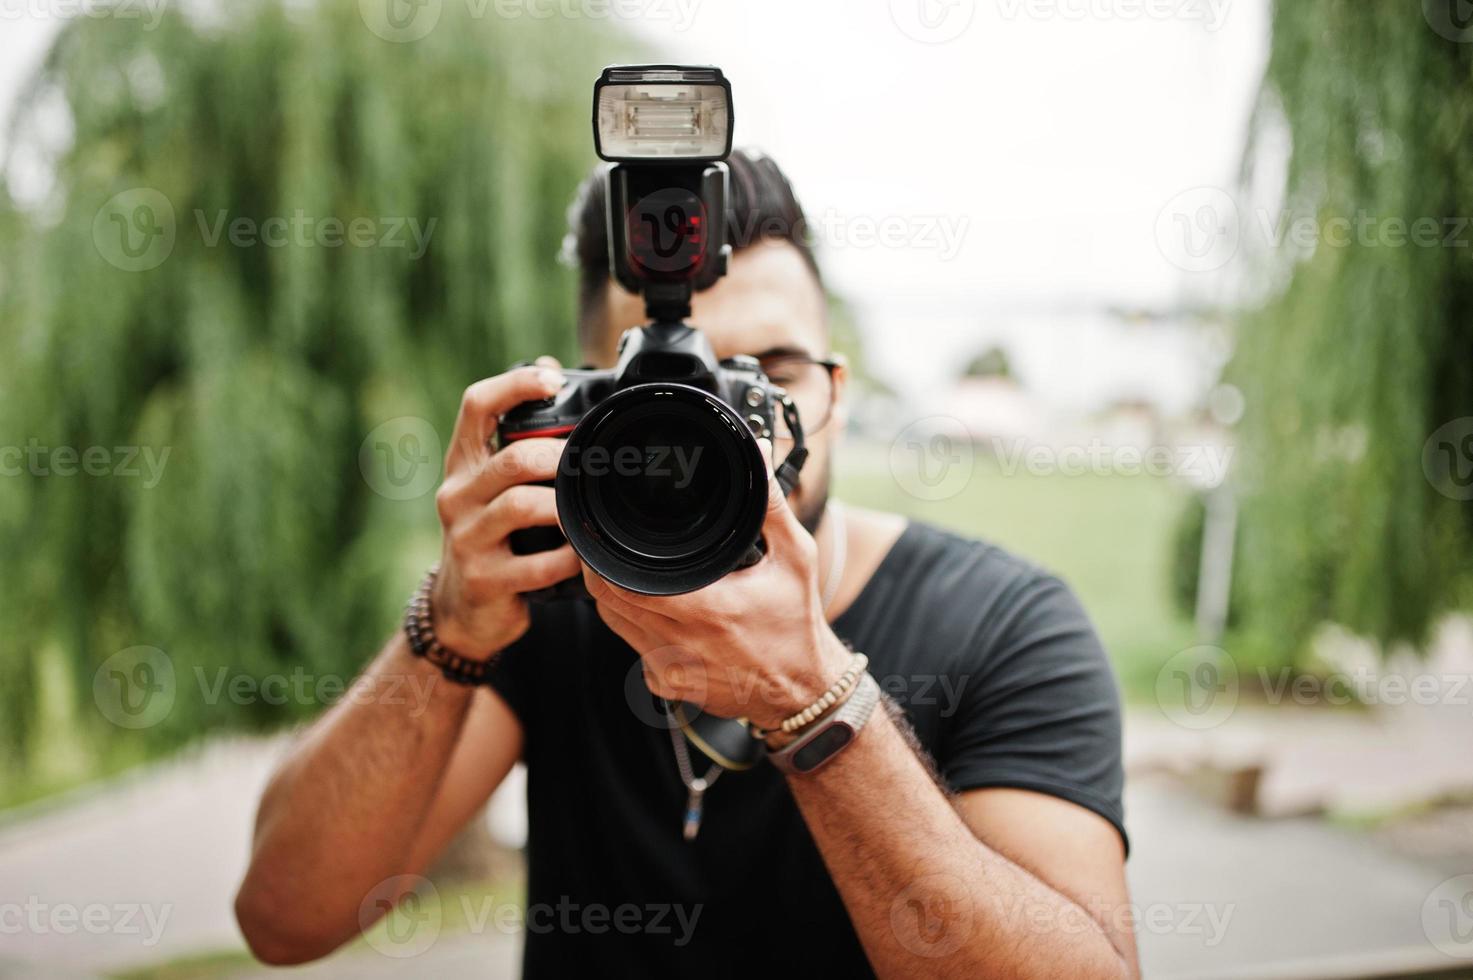 toller, schöner, großer arabischer bart-macho-mann-fotograf in brille und schwarzem t-shirt mit professioneller kamera in der hand. foto